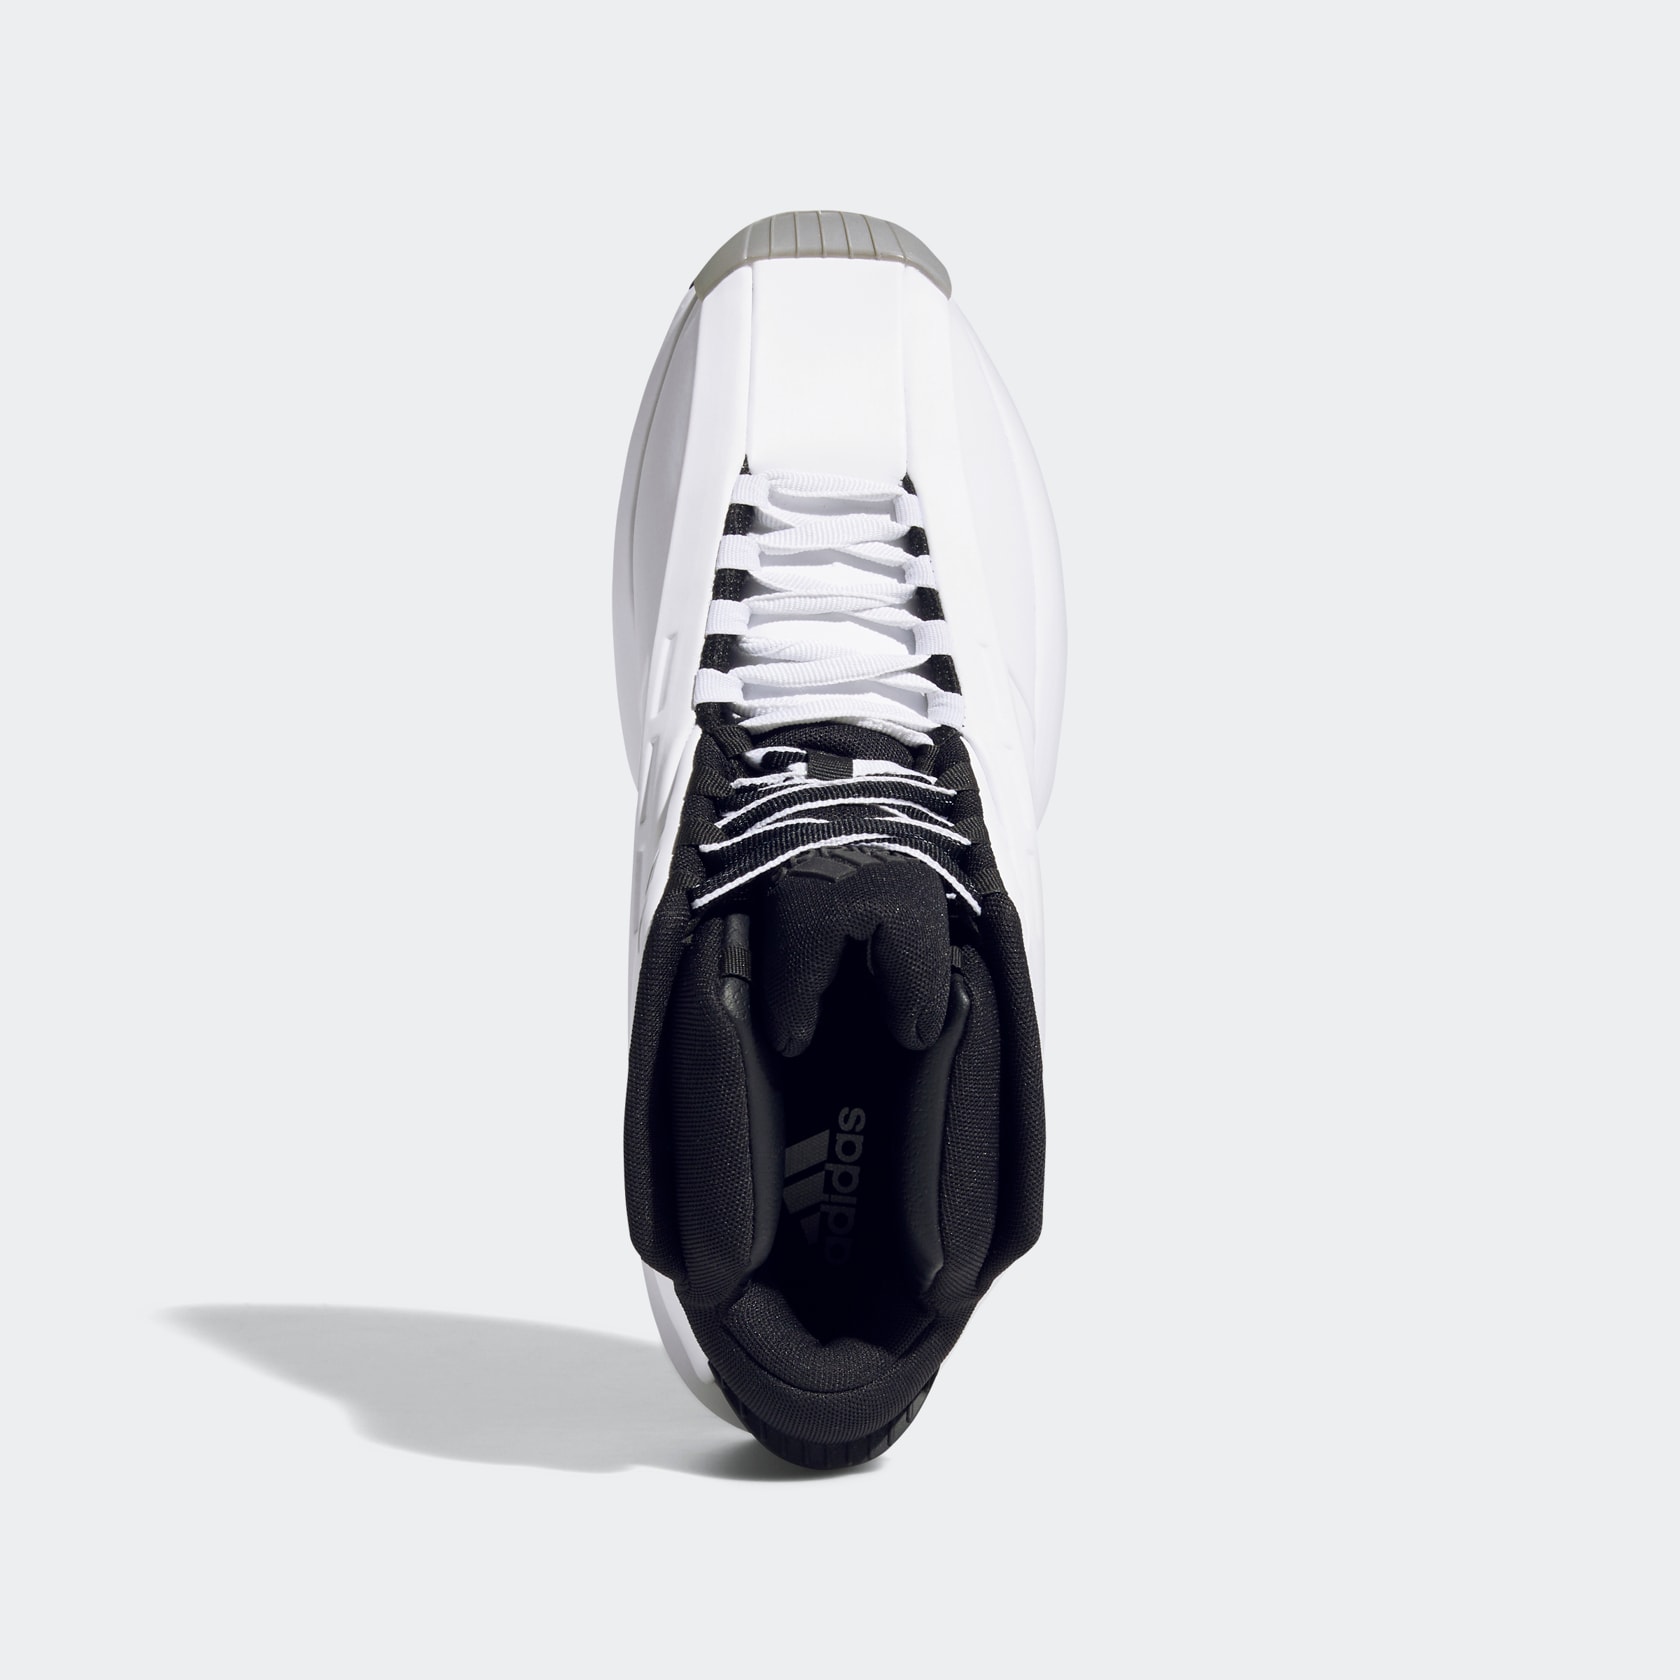 復刻回歸！adidas 經典鞋款 Crazy 97 EQT、Crazy 1 台灣發售情報正式公開